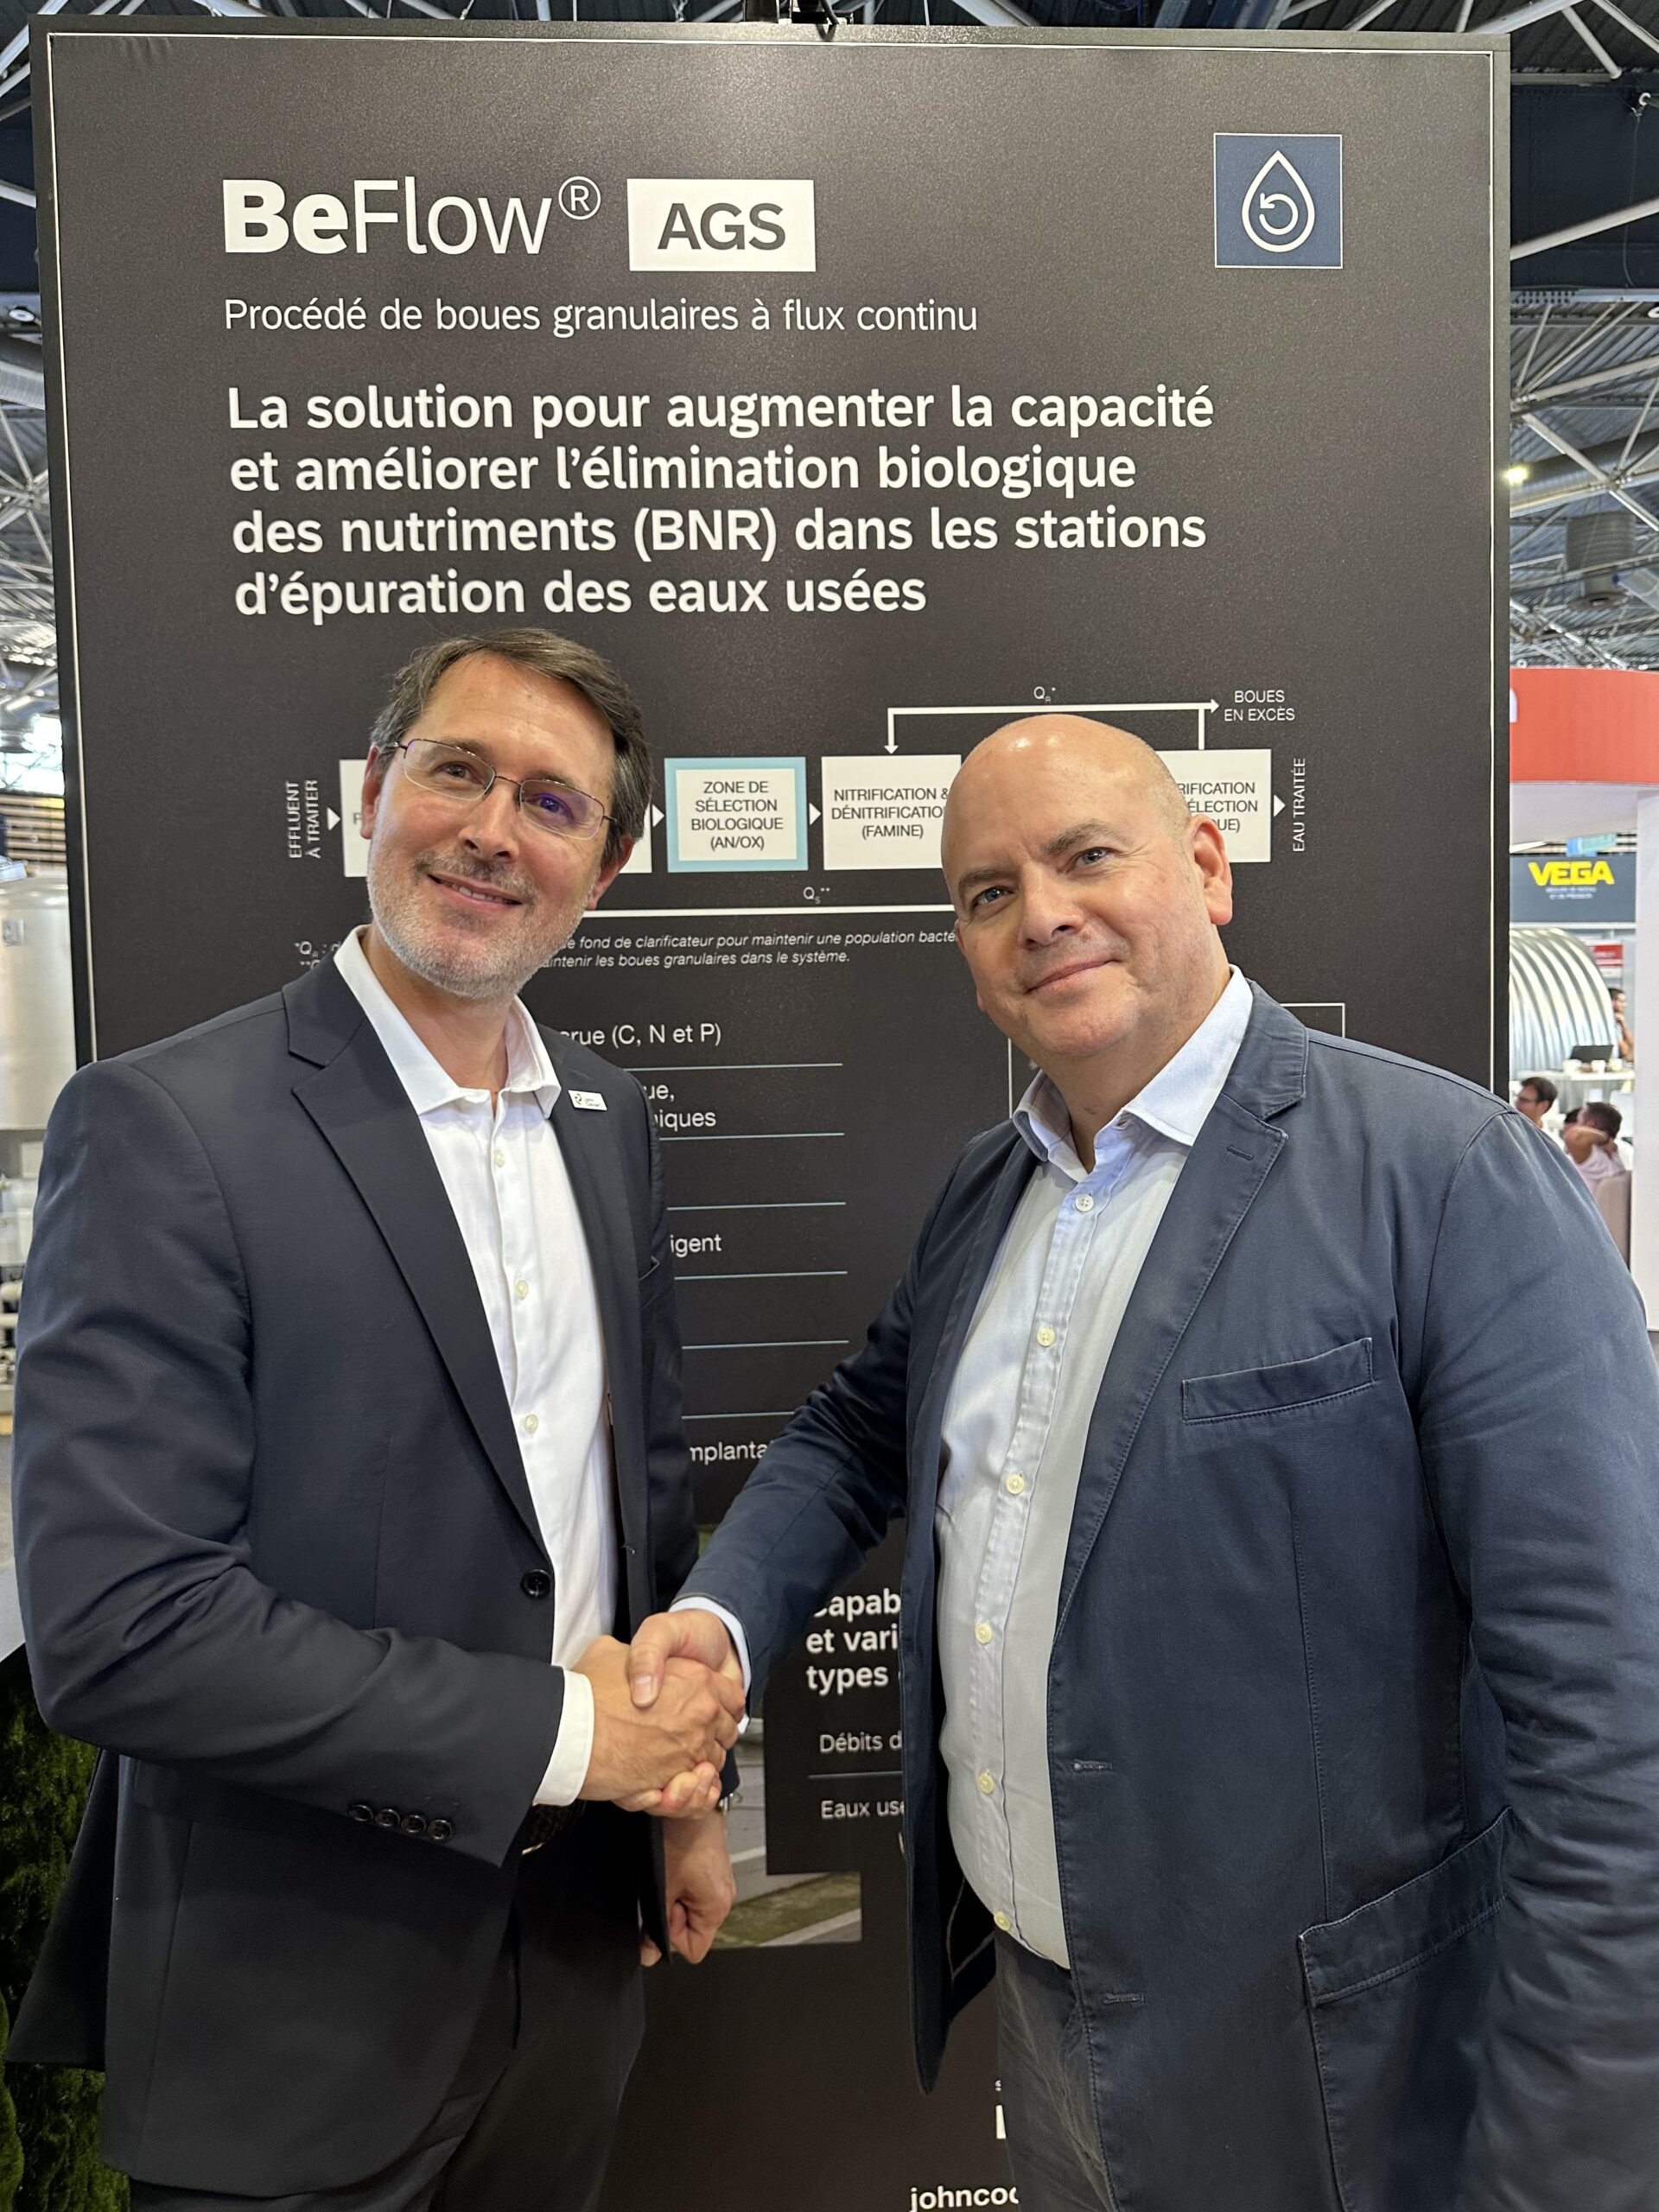 John Cockerill et Stereau partenaires pour commercialiser la solution BeFlow AGS sur le marché français